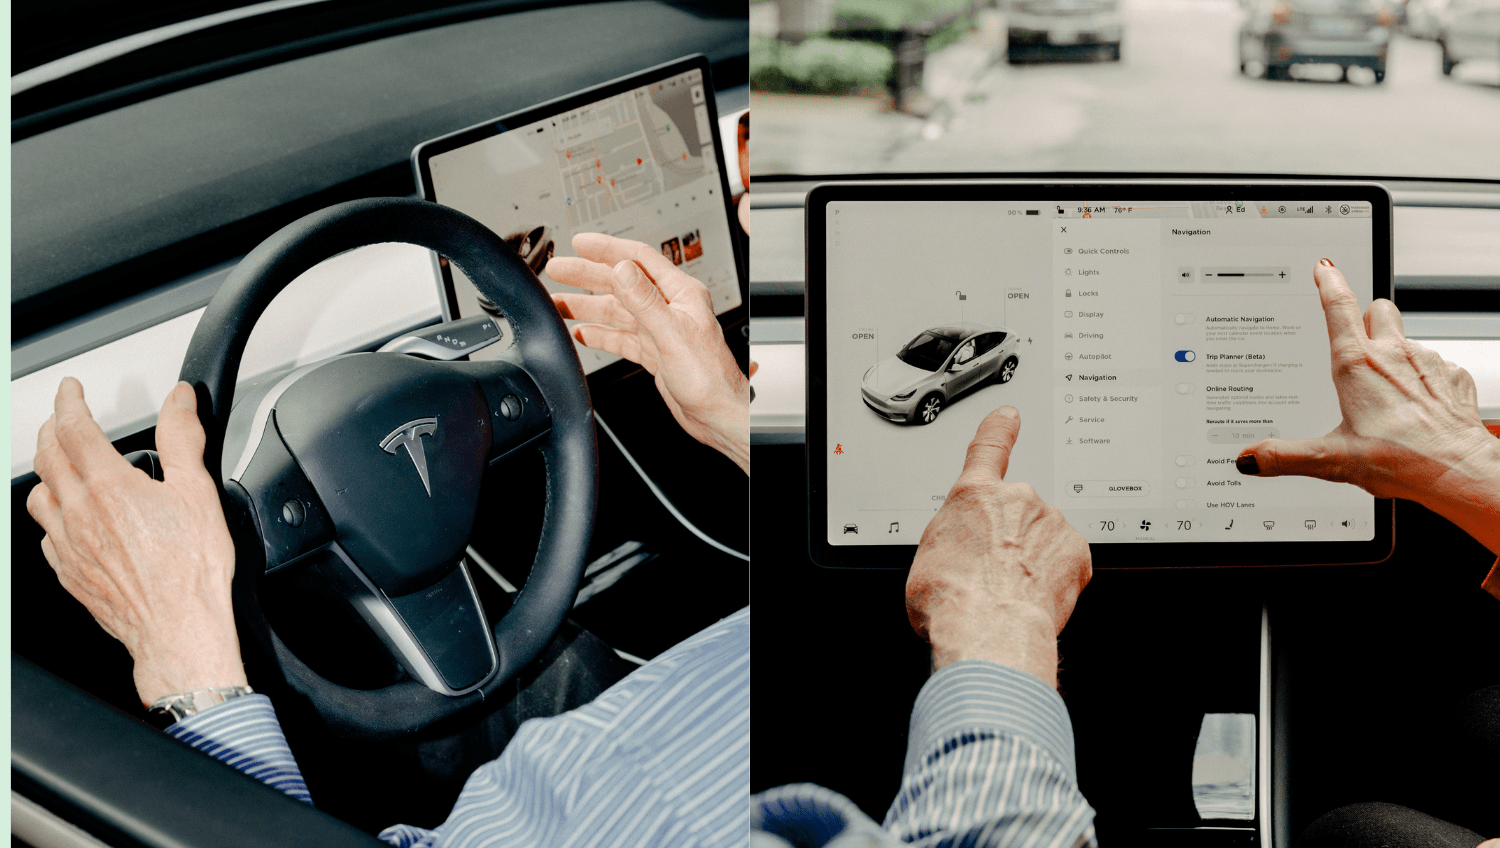 Una pareja hace una demostración de algunas de las opciones y capacidades a las que se pueden acceder a través de la pantalla táctil de su automóvil Tesla en Chicago, el 4 de junio de 2021. (Evan Jenkins/The New York Times).